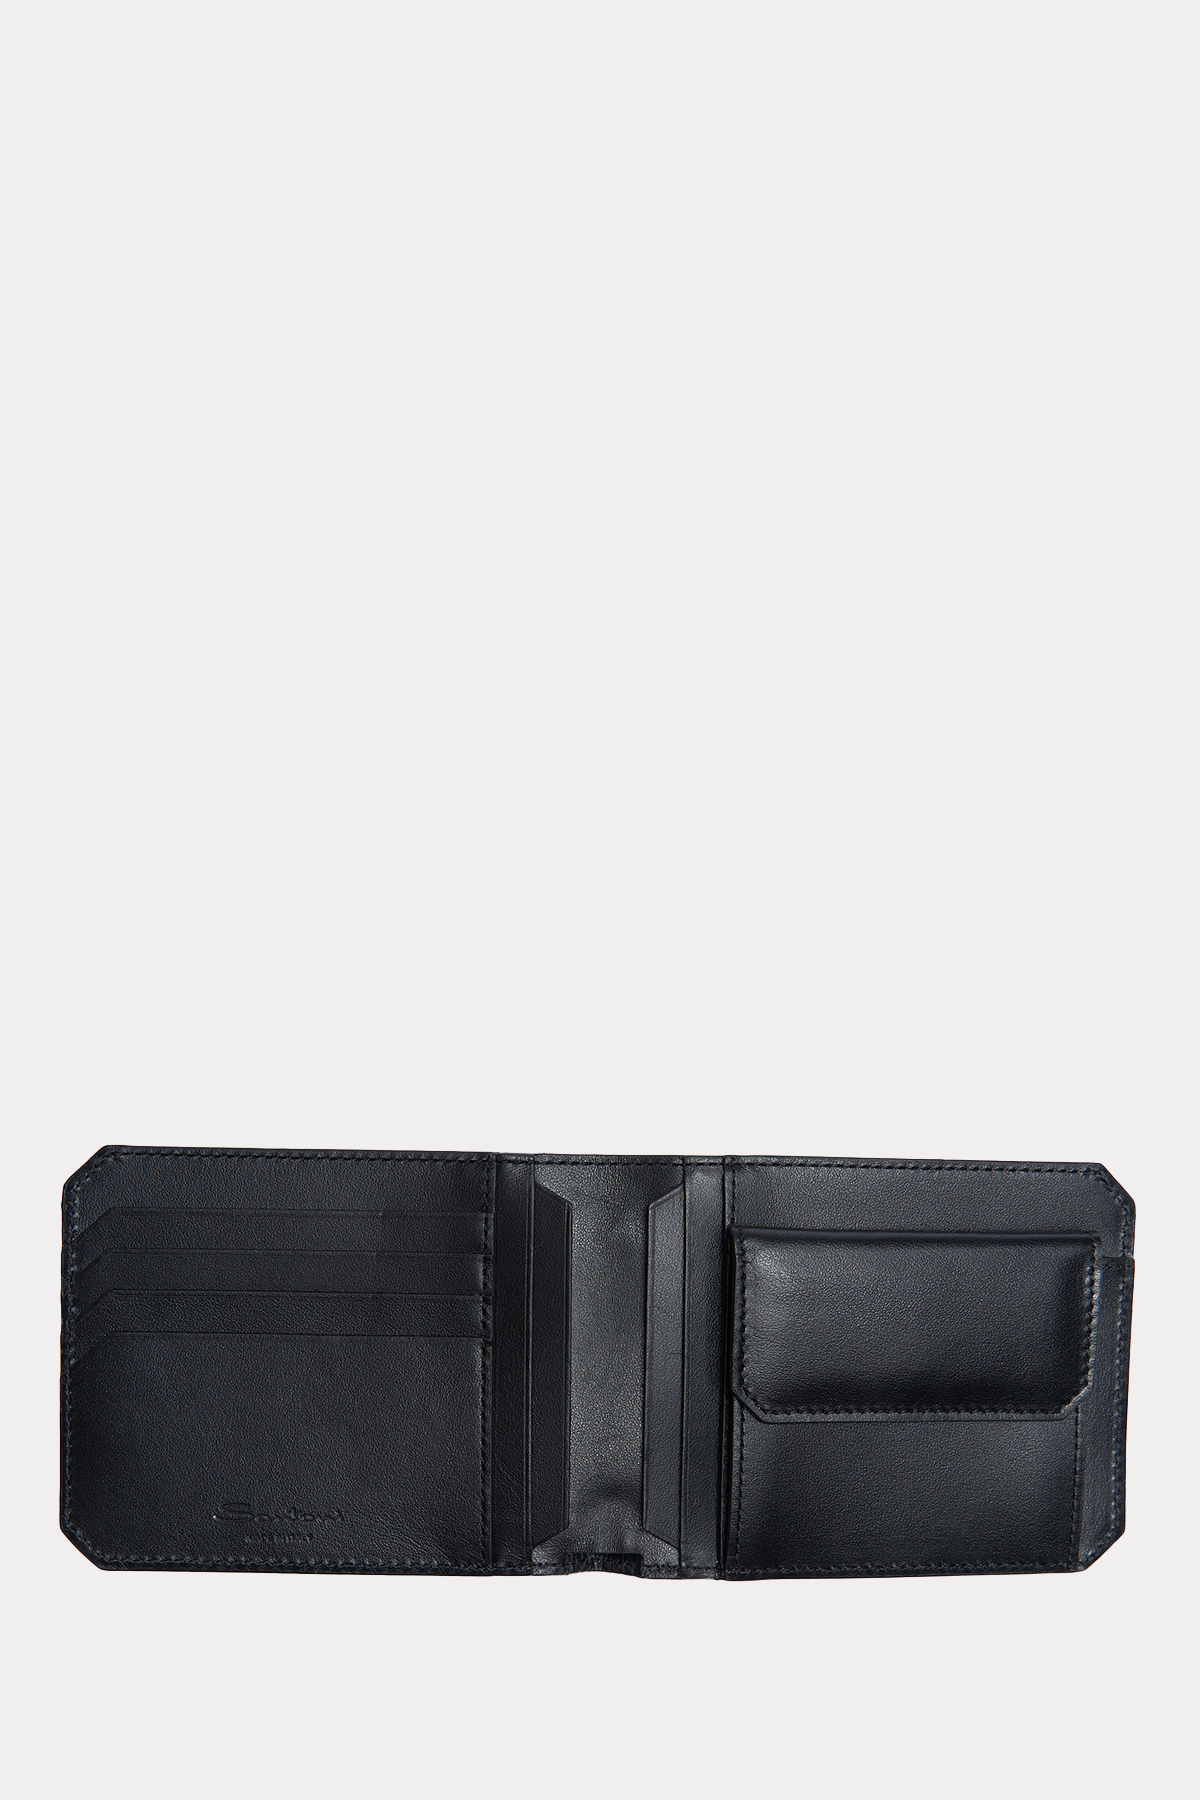 Brieftasche in schwarz